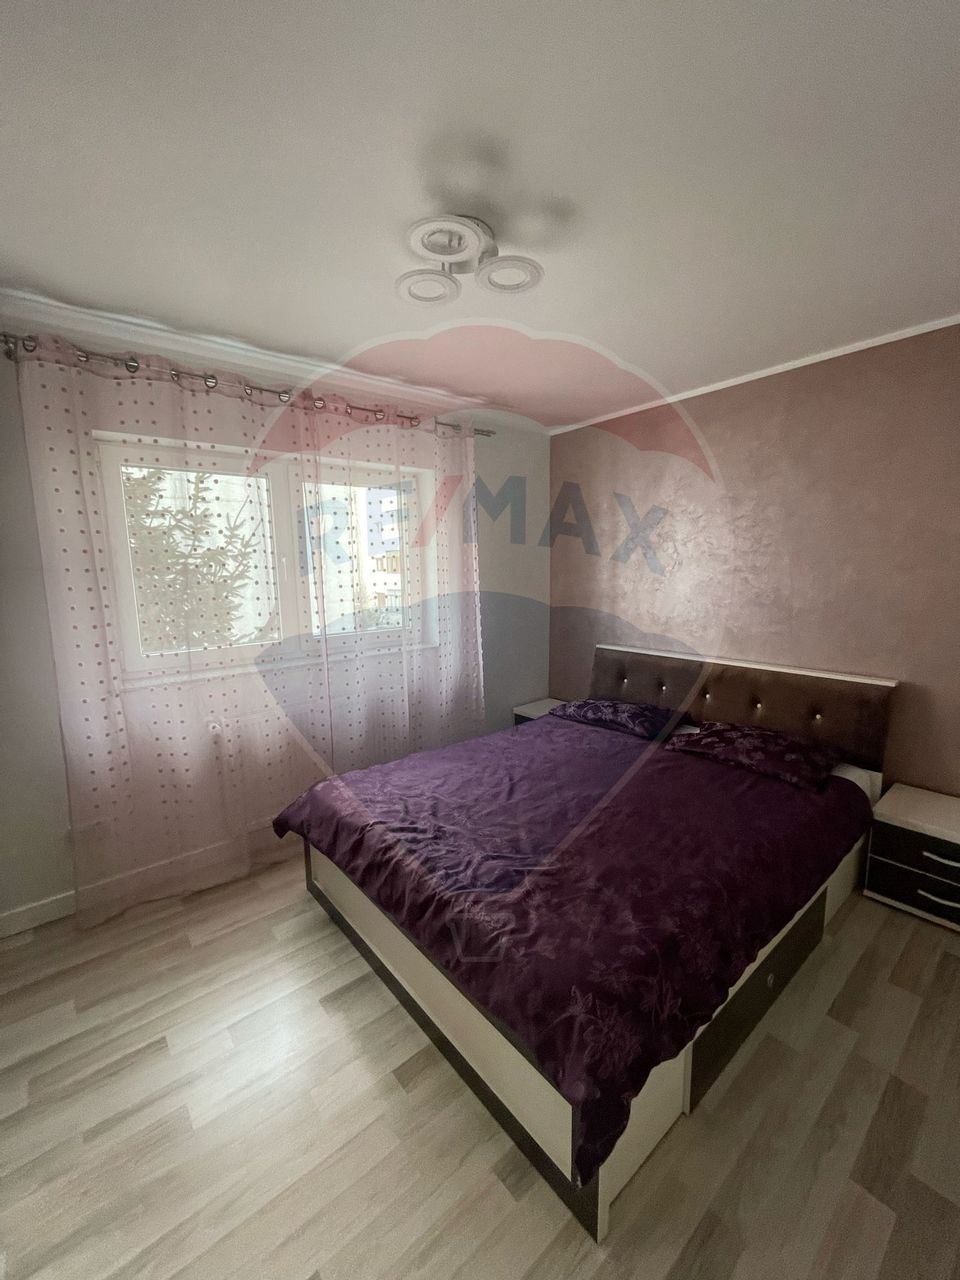 Apartament cu 3 camere de închiriat în zona Mihai Viteazu